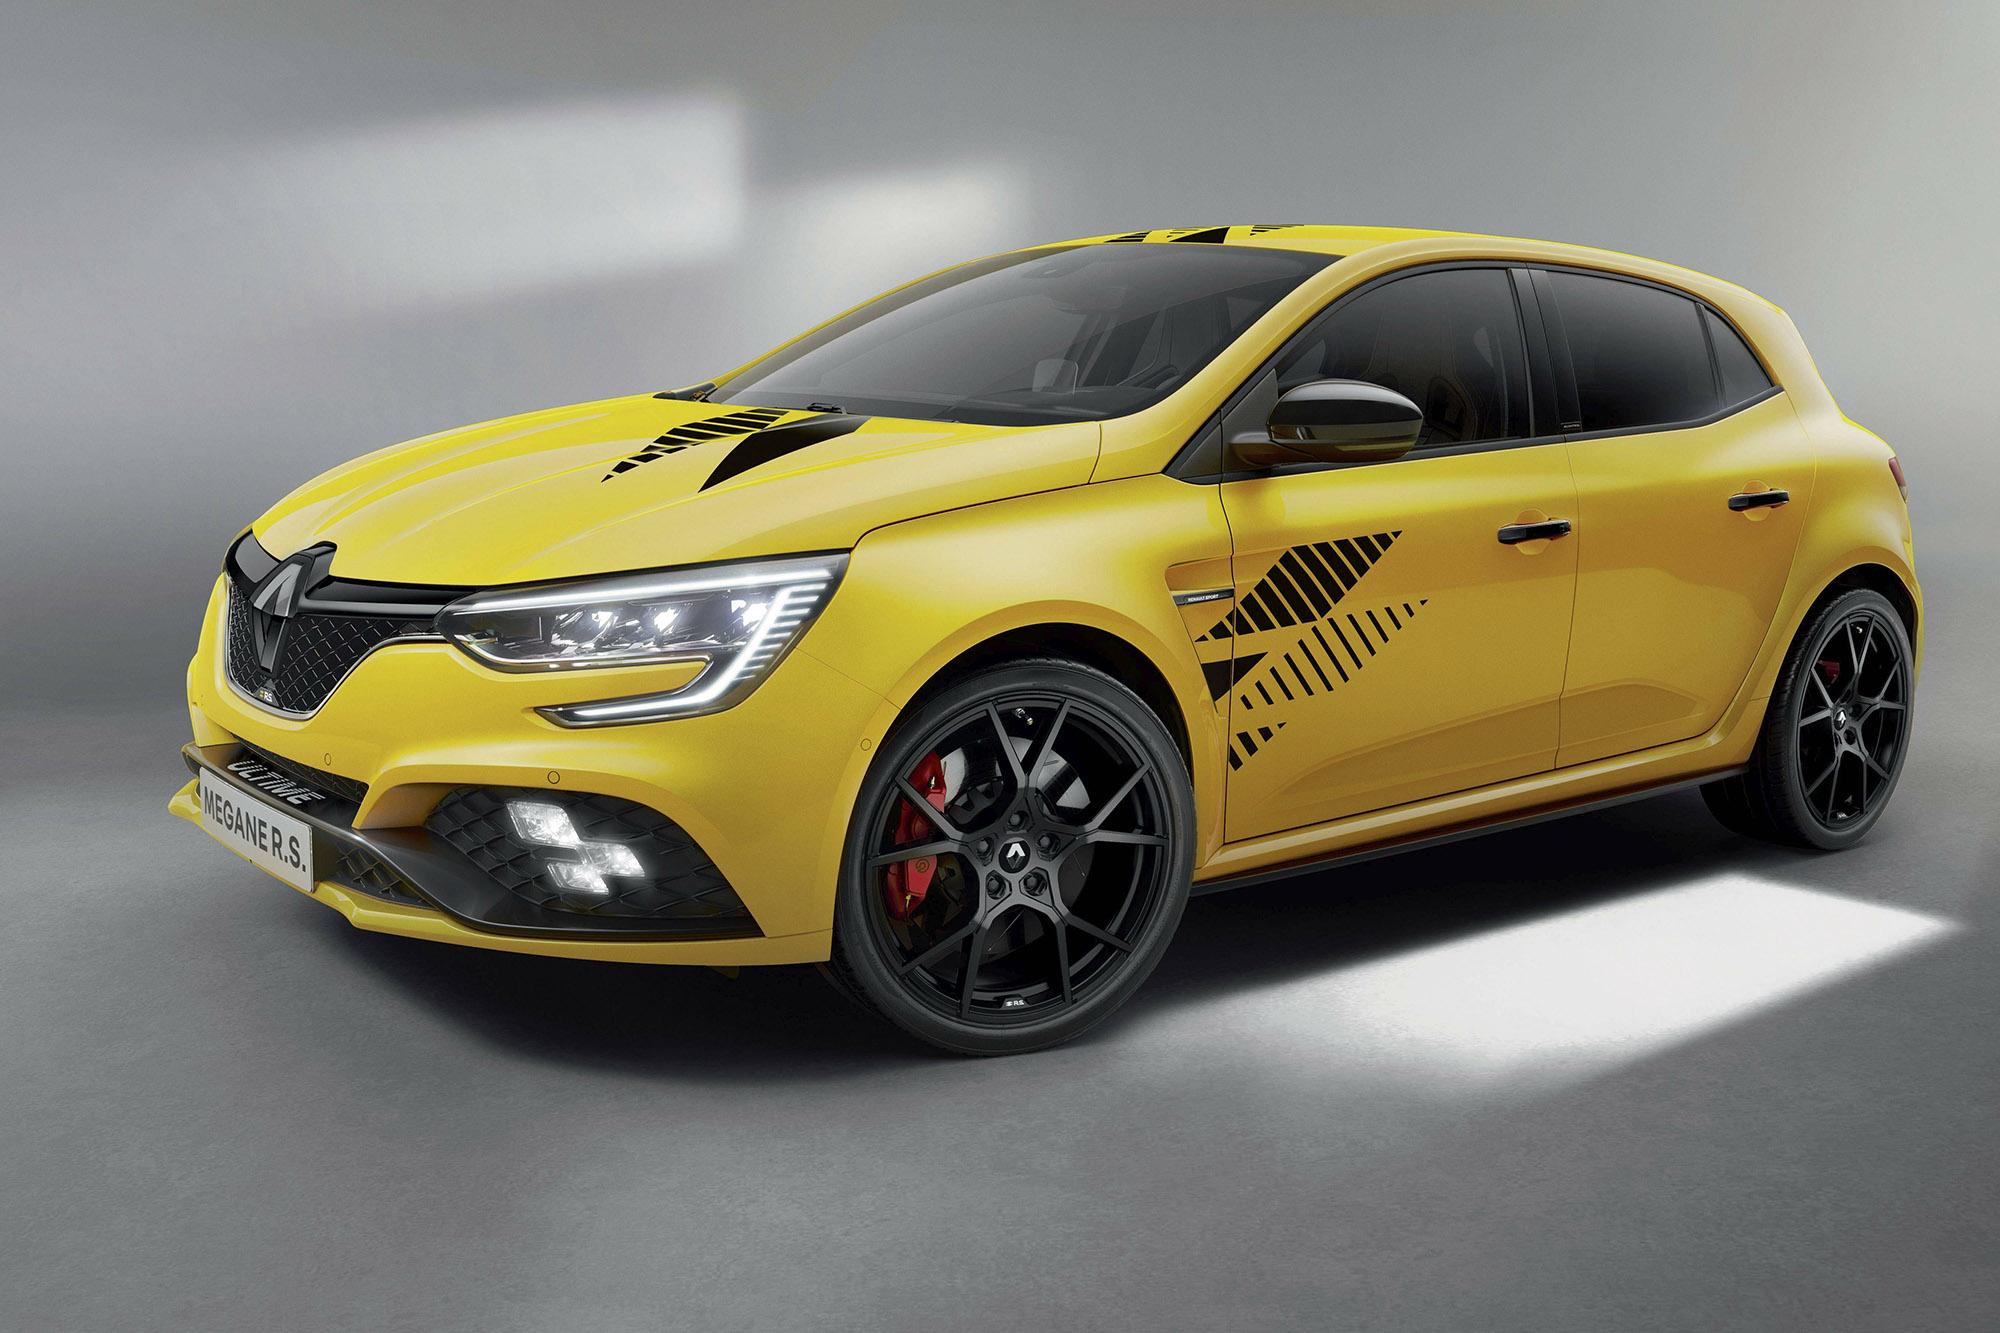 Megane RS Ultime: Το τελευταίο των κορυφαίων Renault